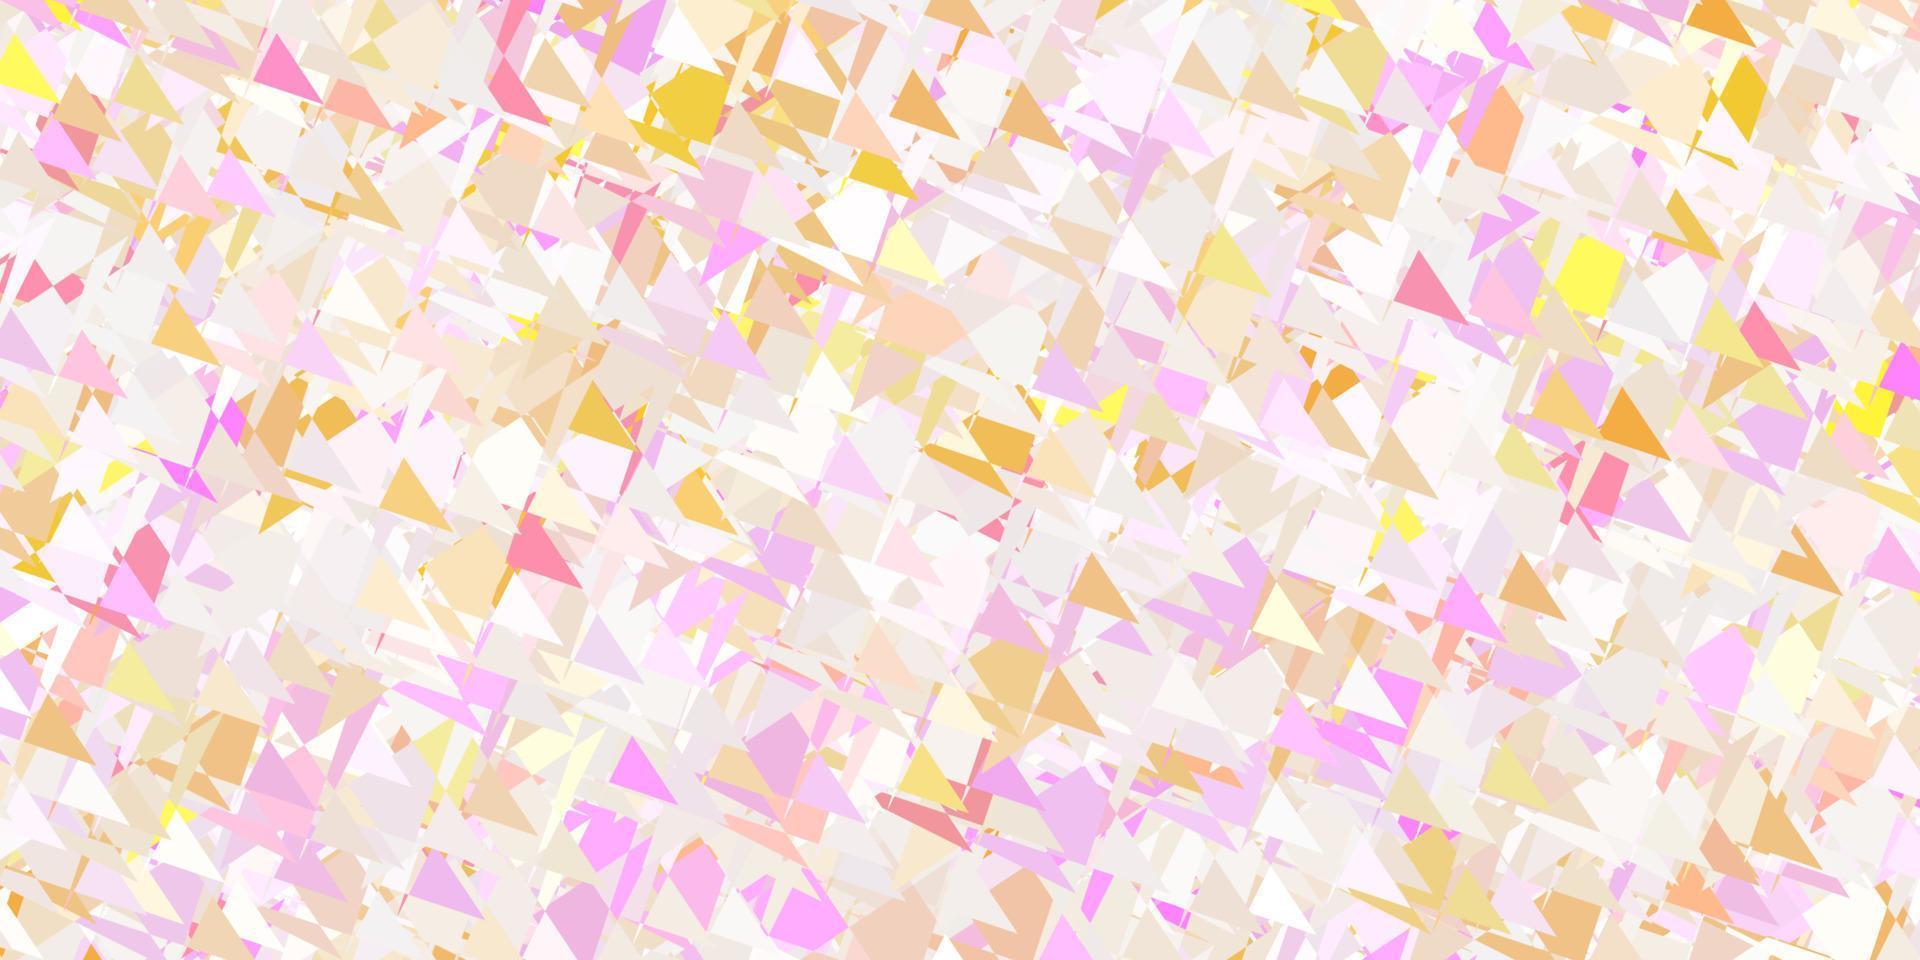 padrão de vetor rosa claro, amarelo com formas poligonais.